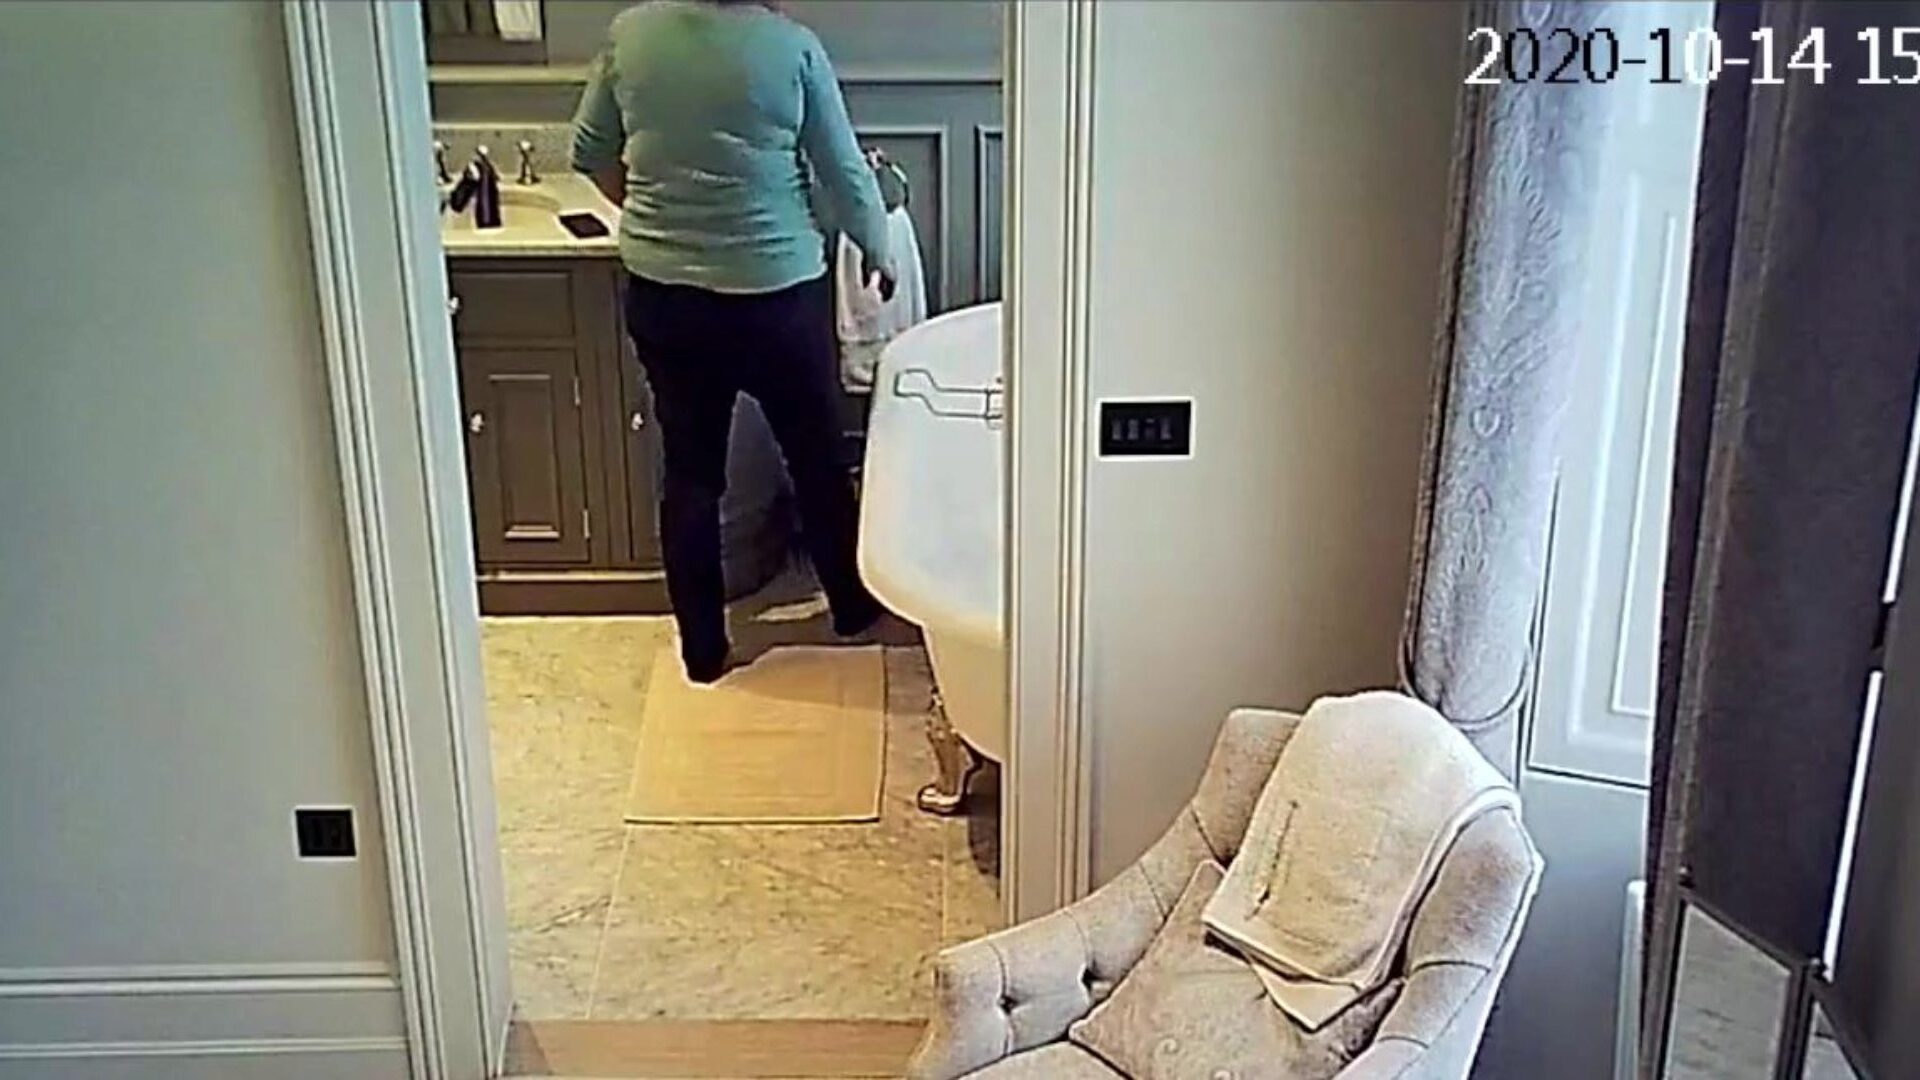 ipcam milf umivaonik glomazan u dobi uzima umivaonik da je ta beba na sigurnosnoj web kameri